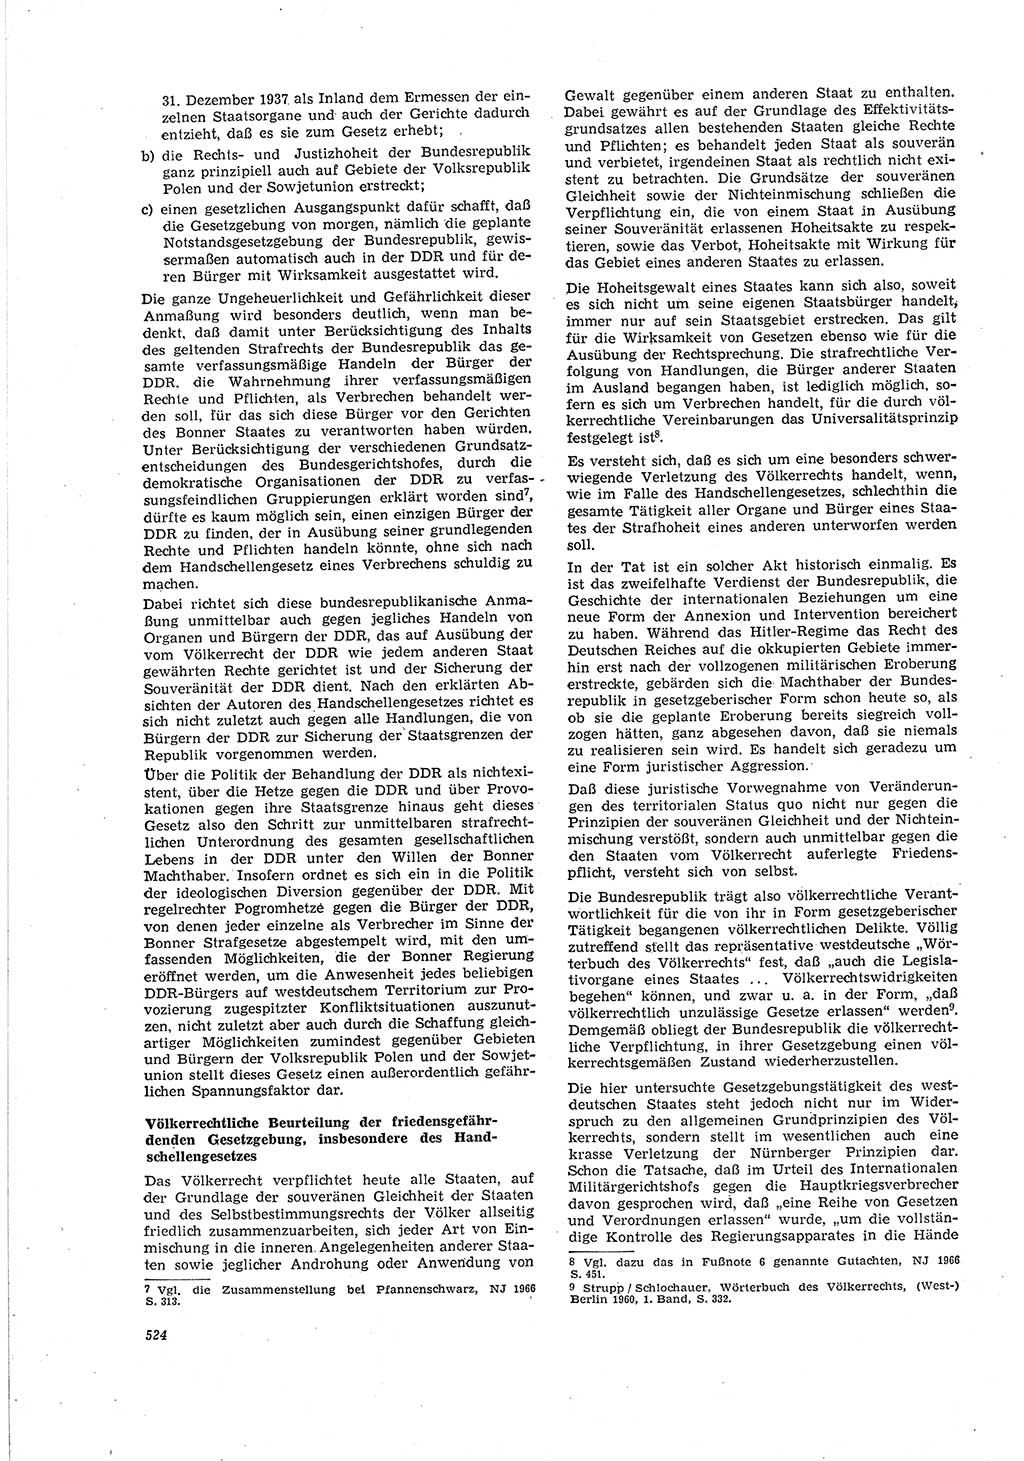 Neue Justiz (NJ), Zeitschrift für Recht und Rechtswissenschaft [Deutsche Demokratische Republik (DDR)], 20. Jahrgang 1966, Seite 524 (NJ DDR 1966, S. 524)